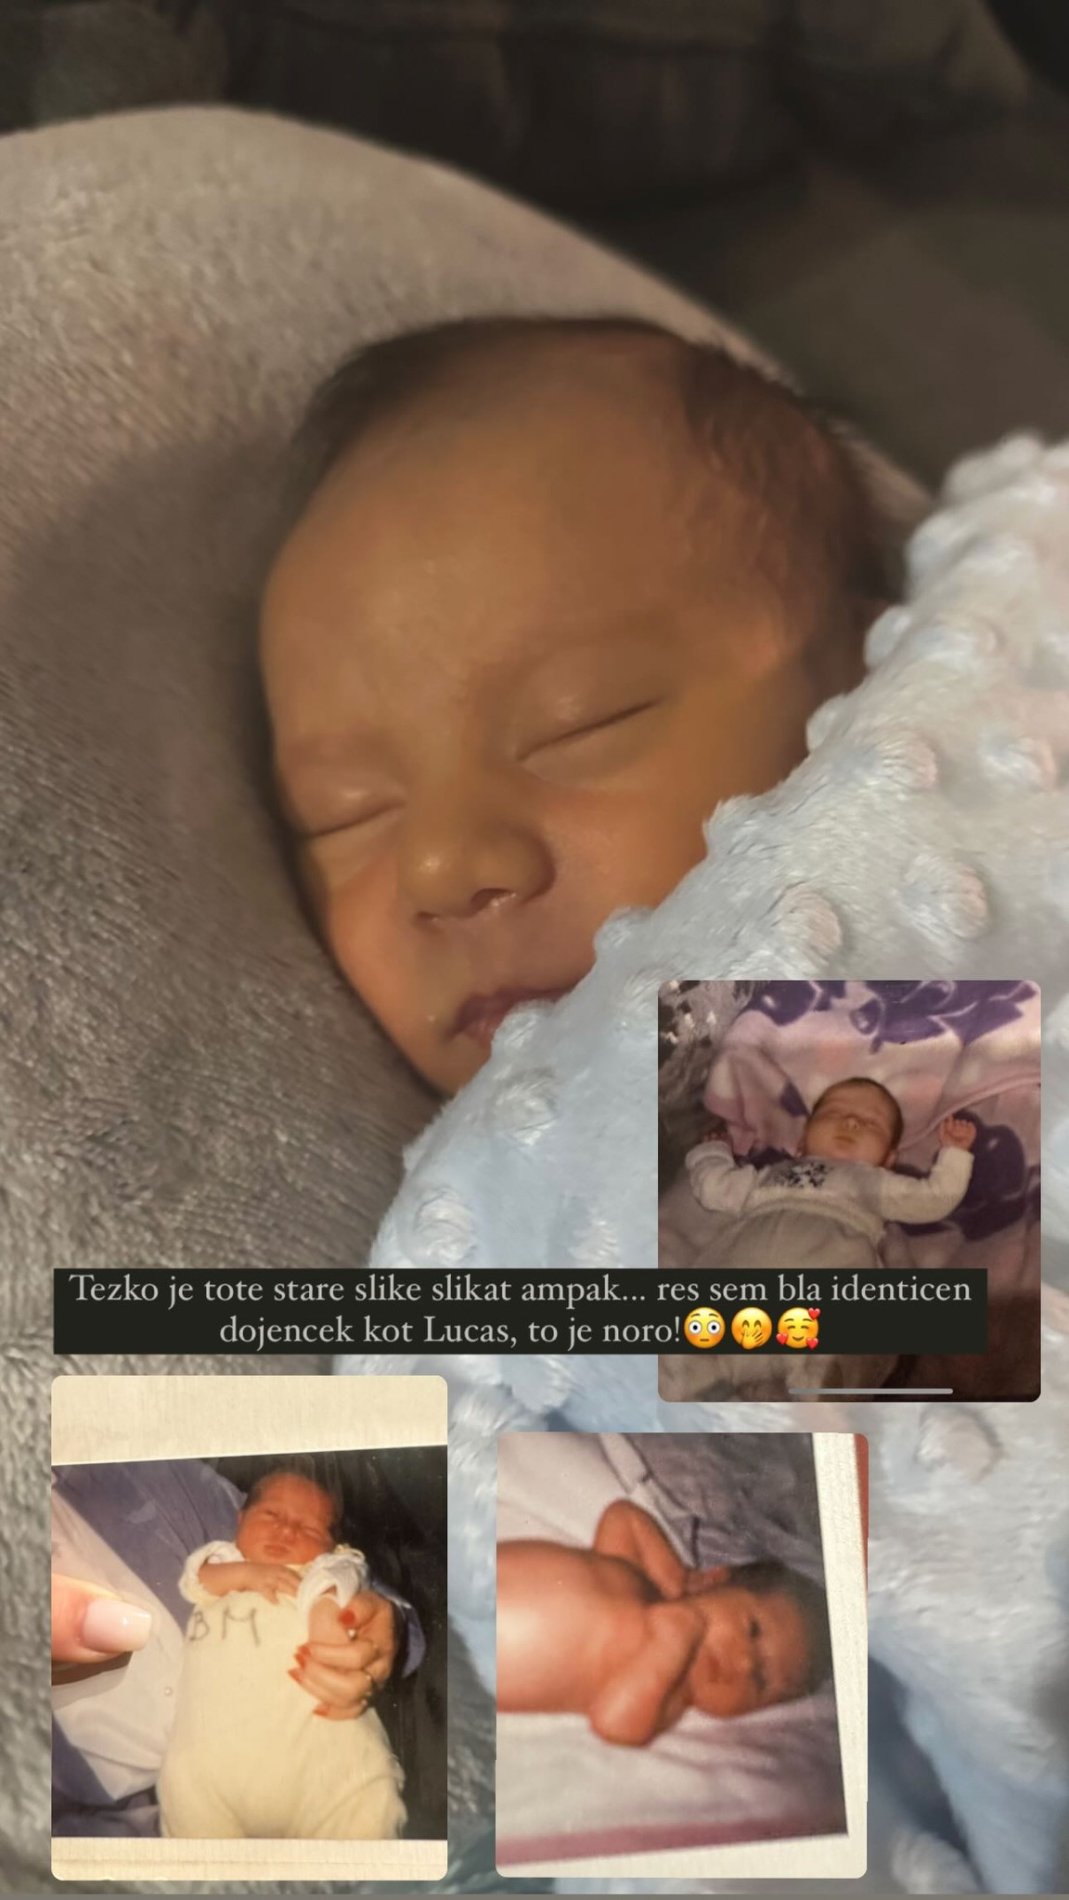 Laura je bila prikupen dojenček. Vir: Instagram